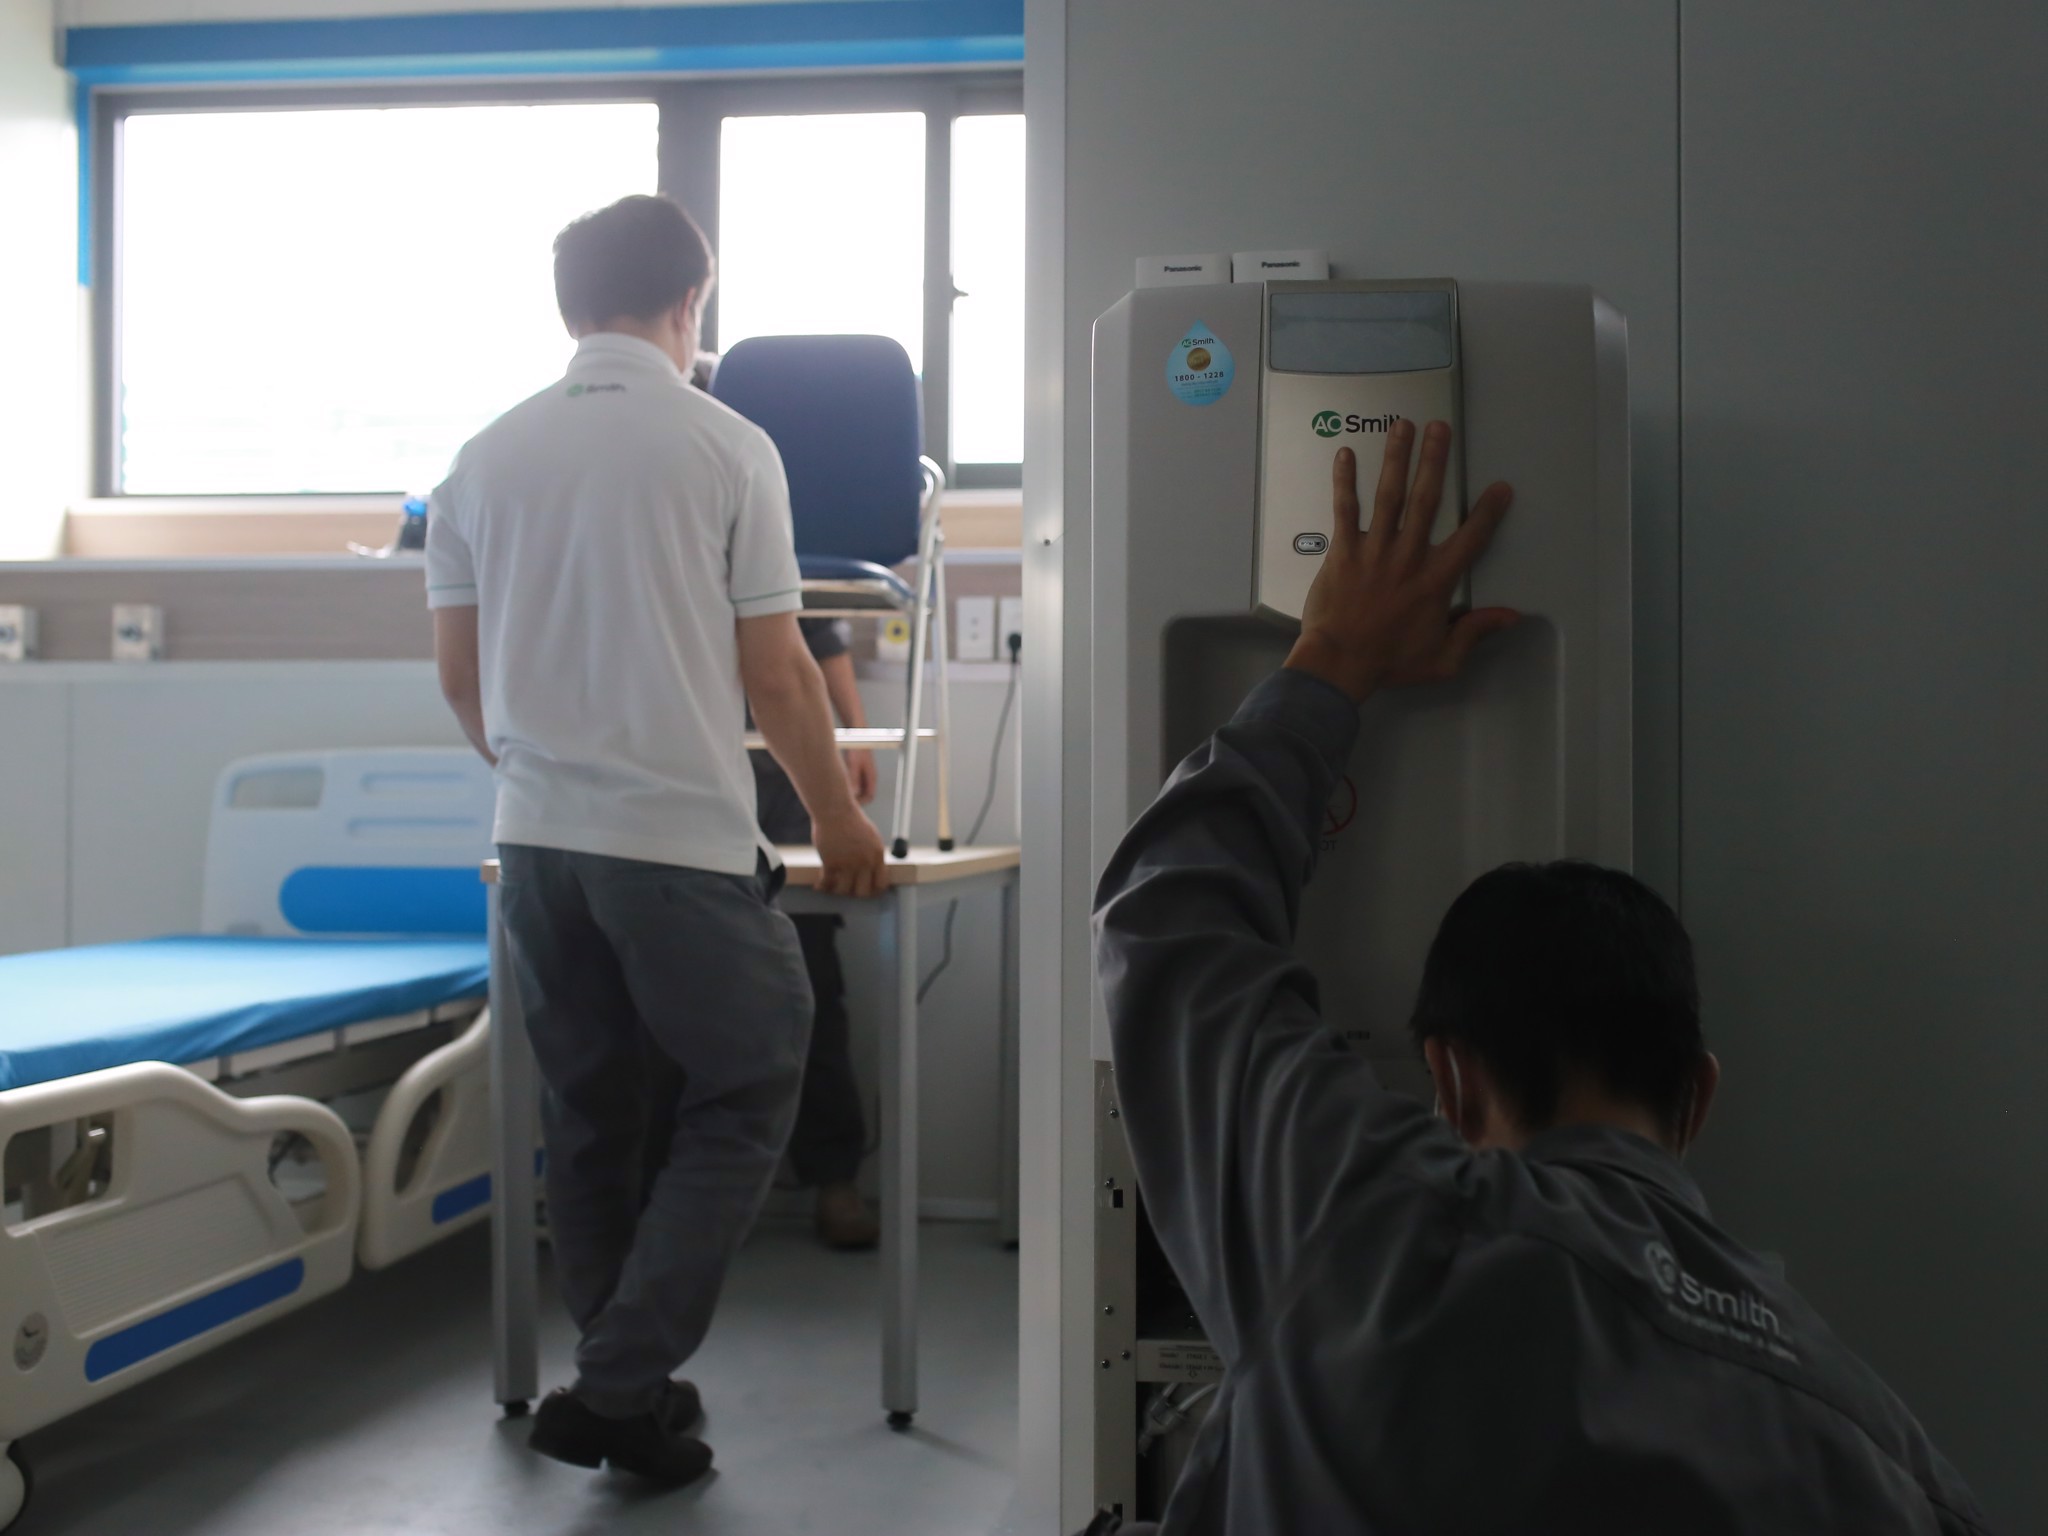 Gấp rút hoàn thiện hệ thống máy lọc nước uống trực tiếp tại Bệnh Viện Điều Trị COVID-19 - Y Hà Nội